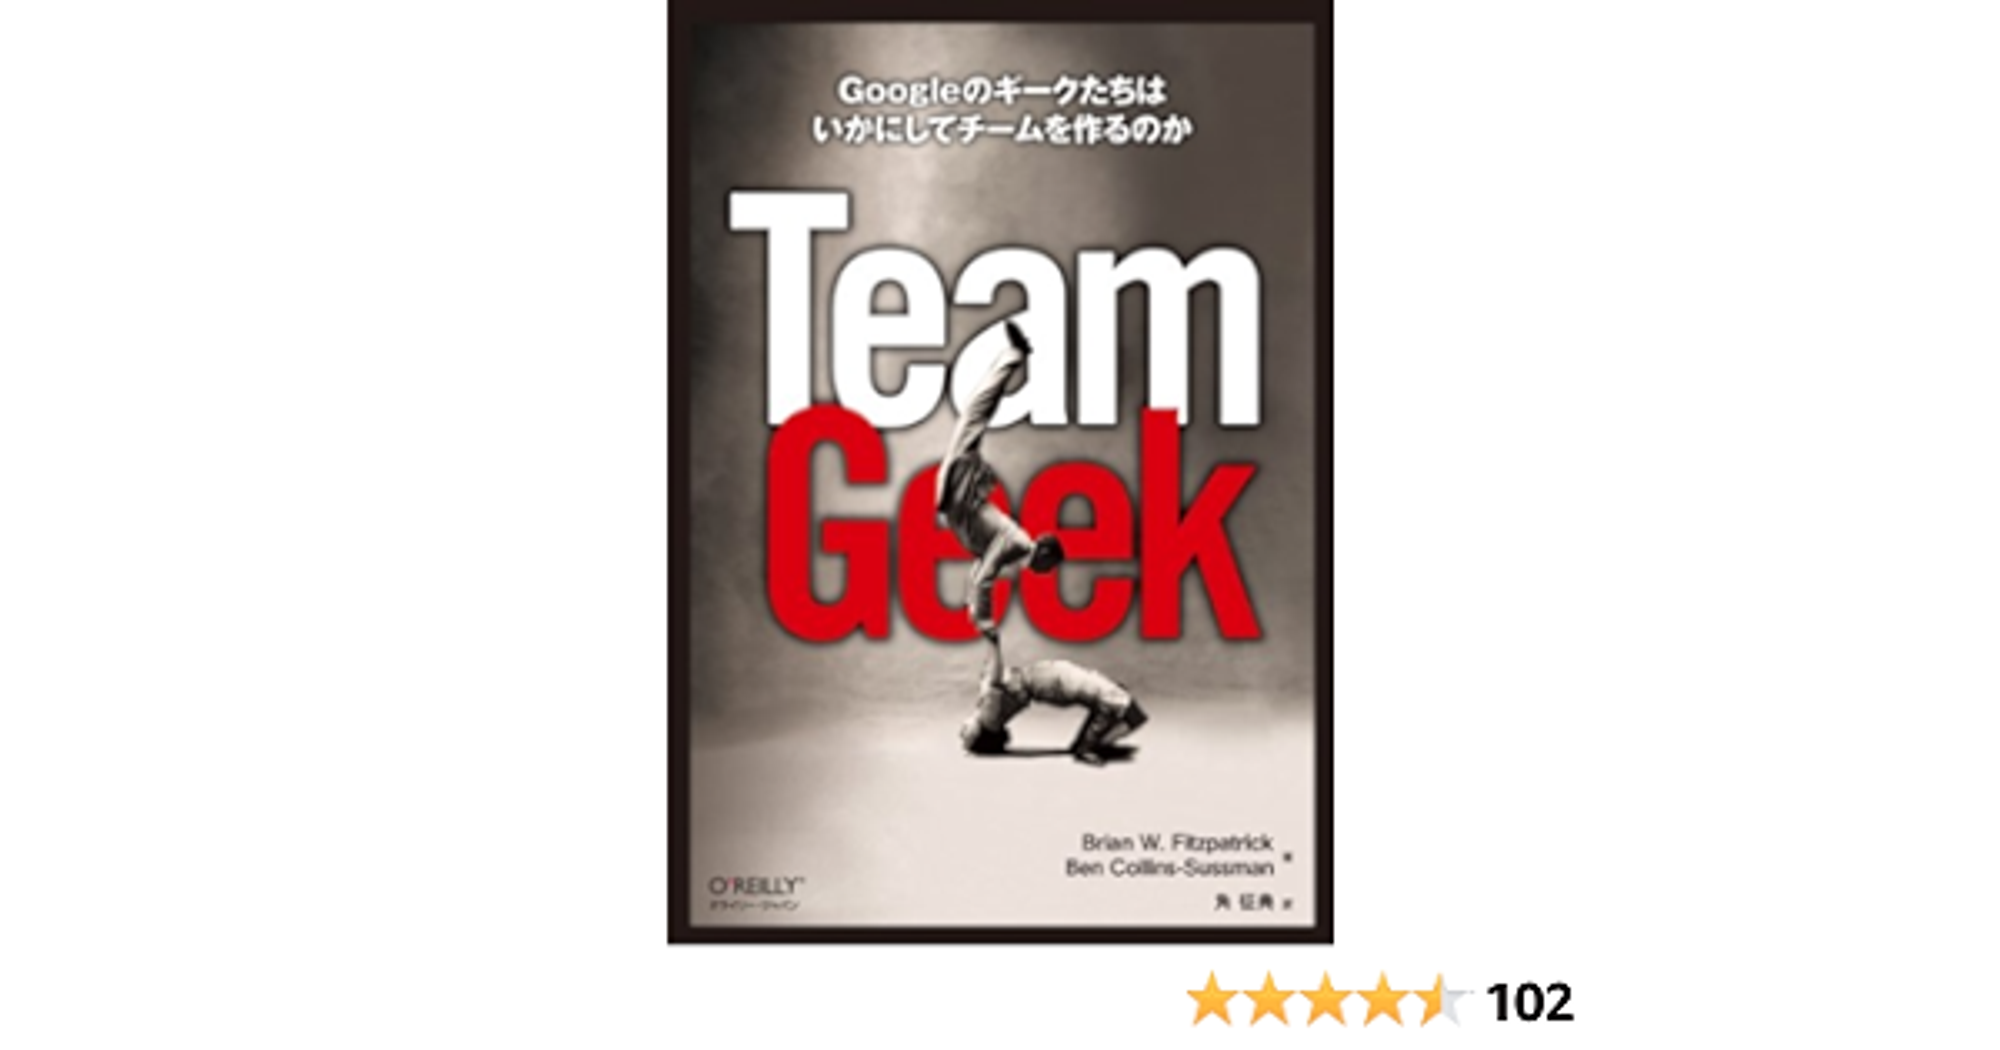 Team Geek ―Googleのギークたちはいかにしてチームを作るのか